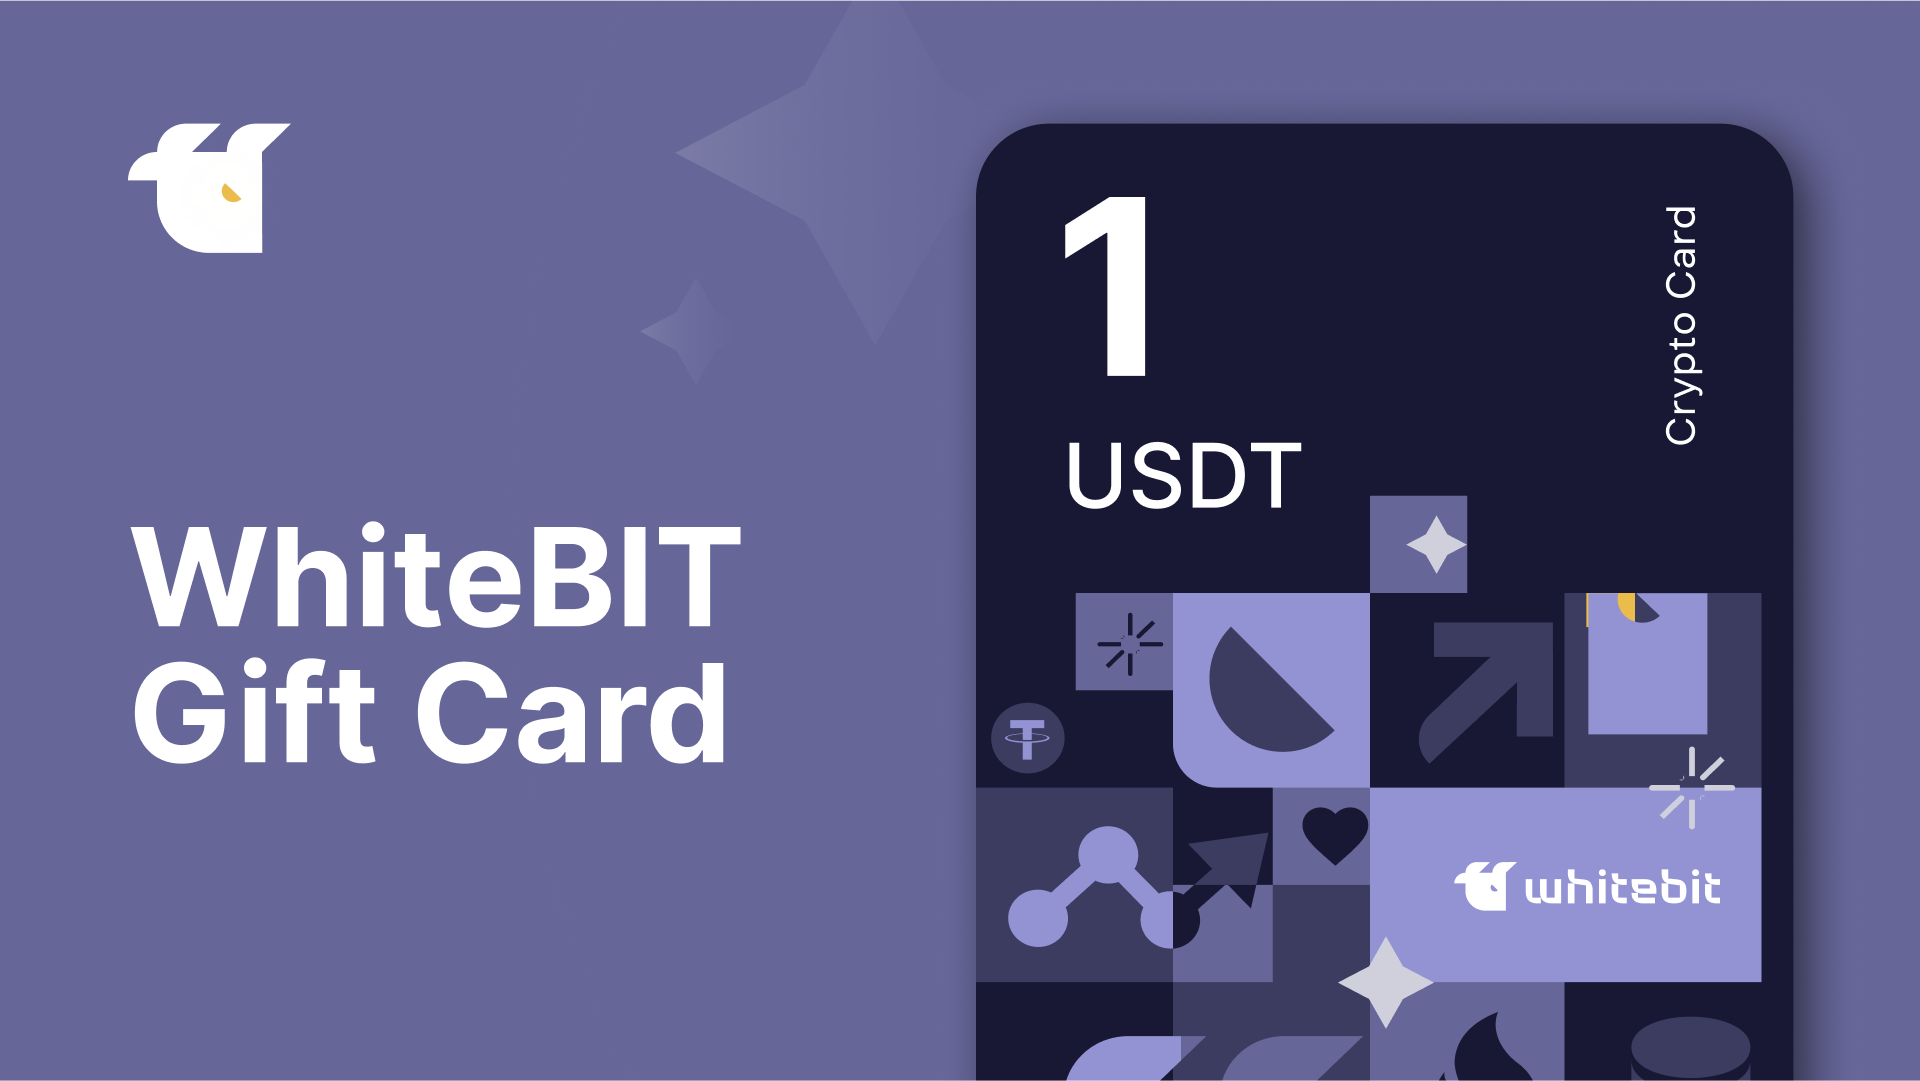 WhiteBIT 1 USDT Gift Card, $1.33